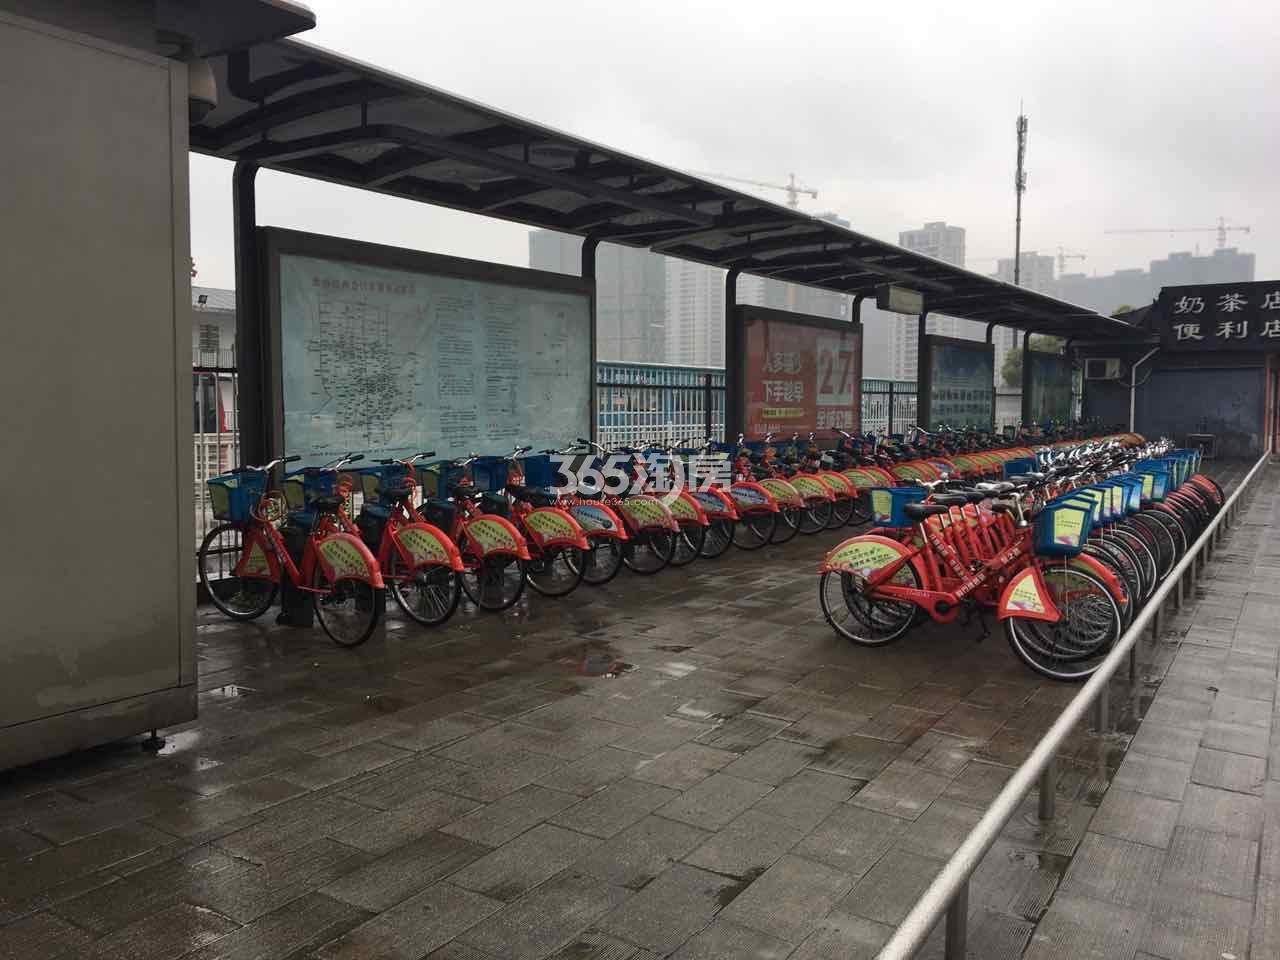 都会艺境风情大道上的自行车租赁点 2017.3.30摄